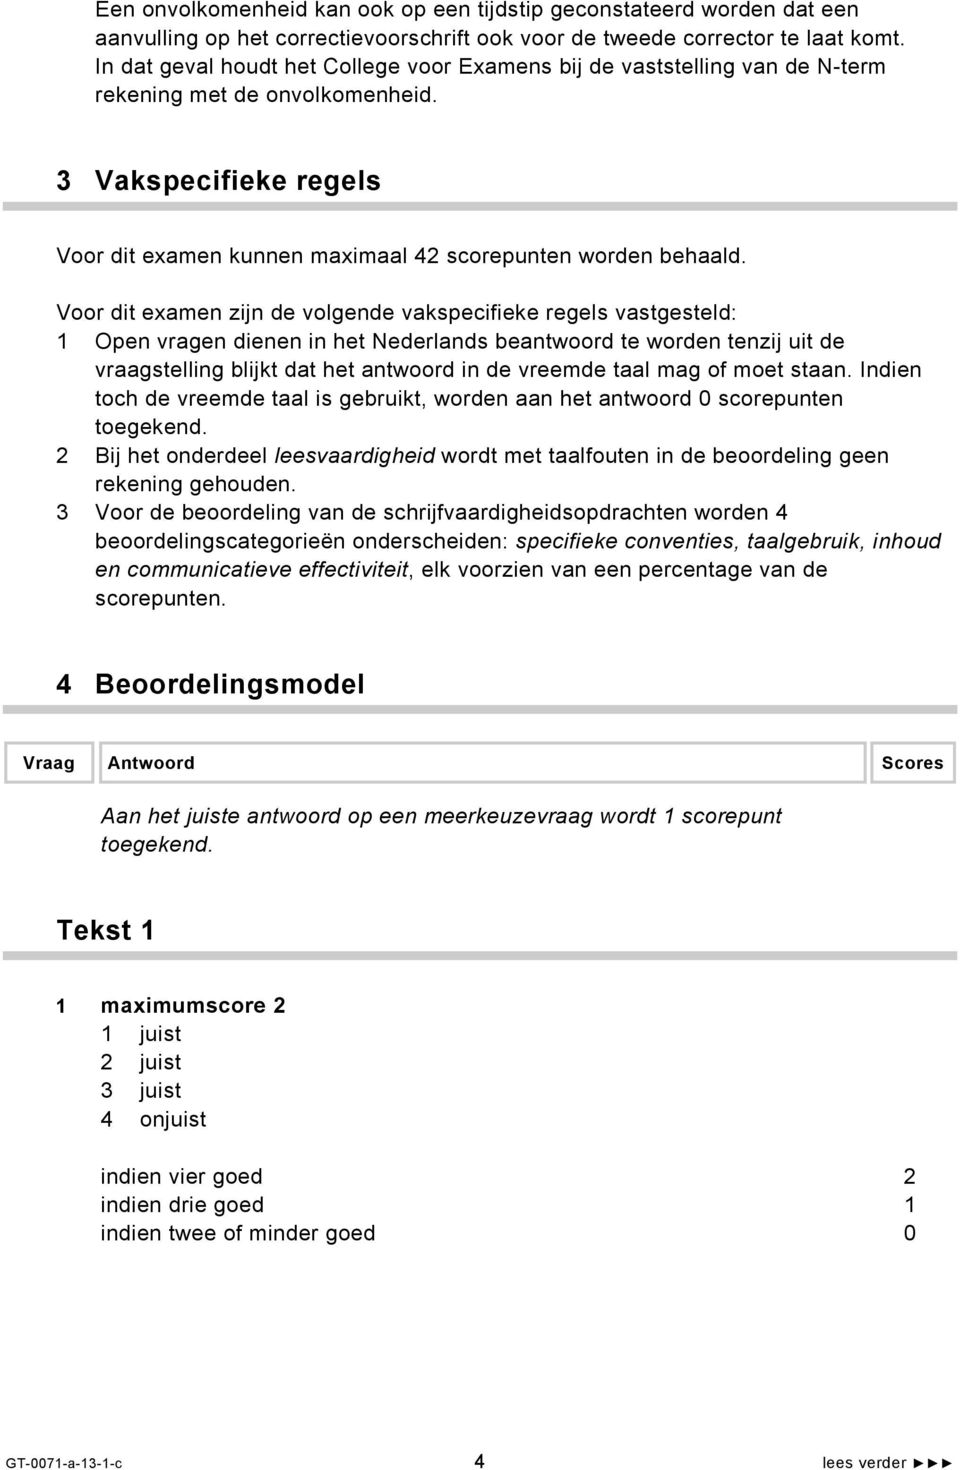 Voor dit examen zijn de volgende vakspecifieke regels vastgesteld: 1 Open vragen dienen in het Nederlands beantwoord te worden tenzij uit de vraagstelling blijkt dat het antwoord in de vreemde taal